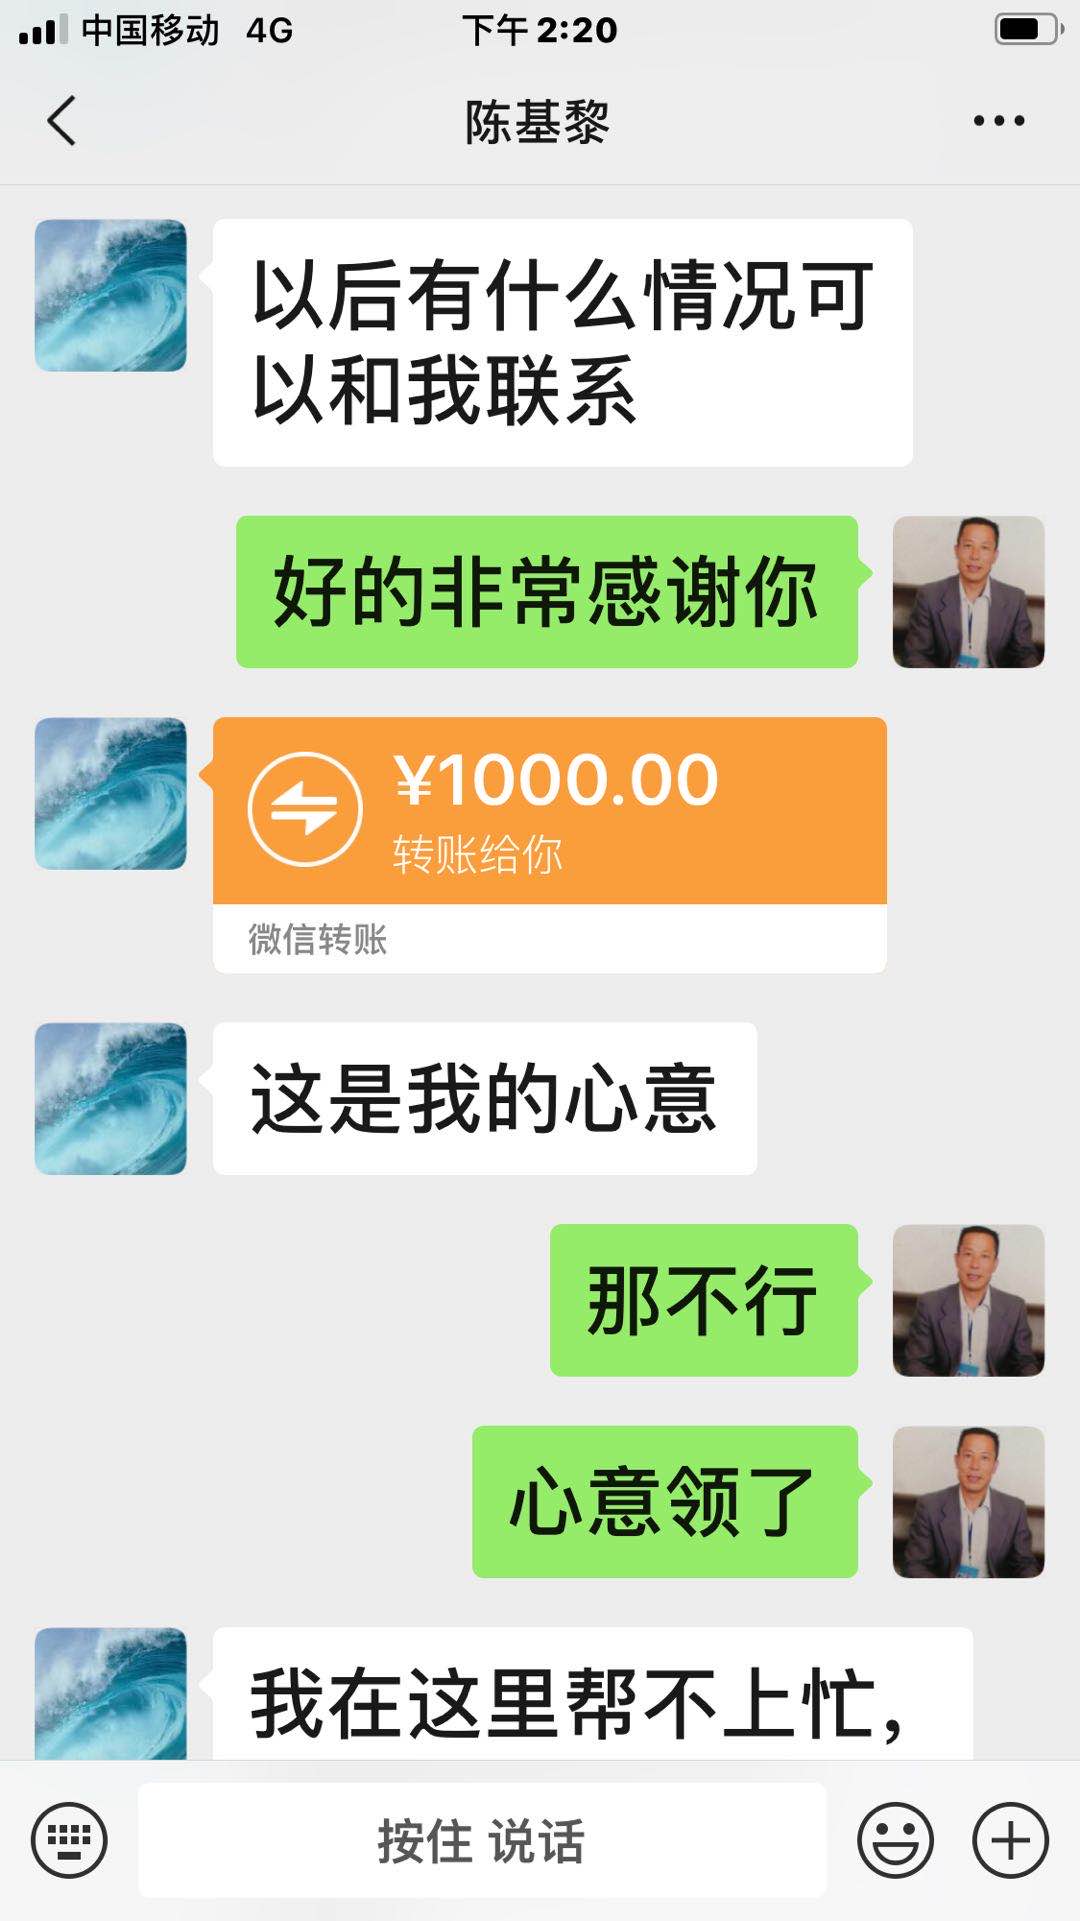 黄石市民在线咨询病情 江苏医生捐款千元表爱心